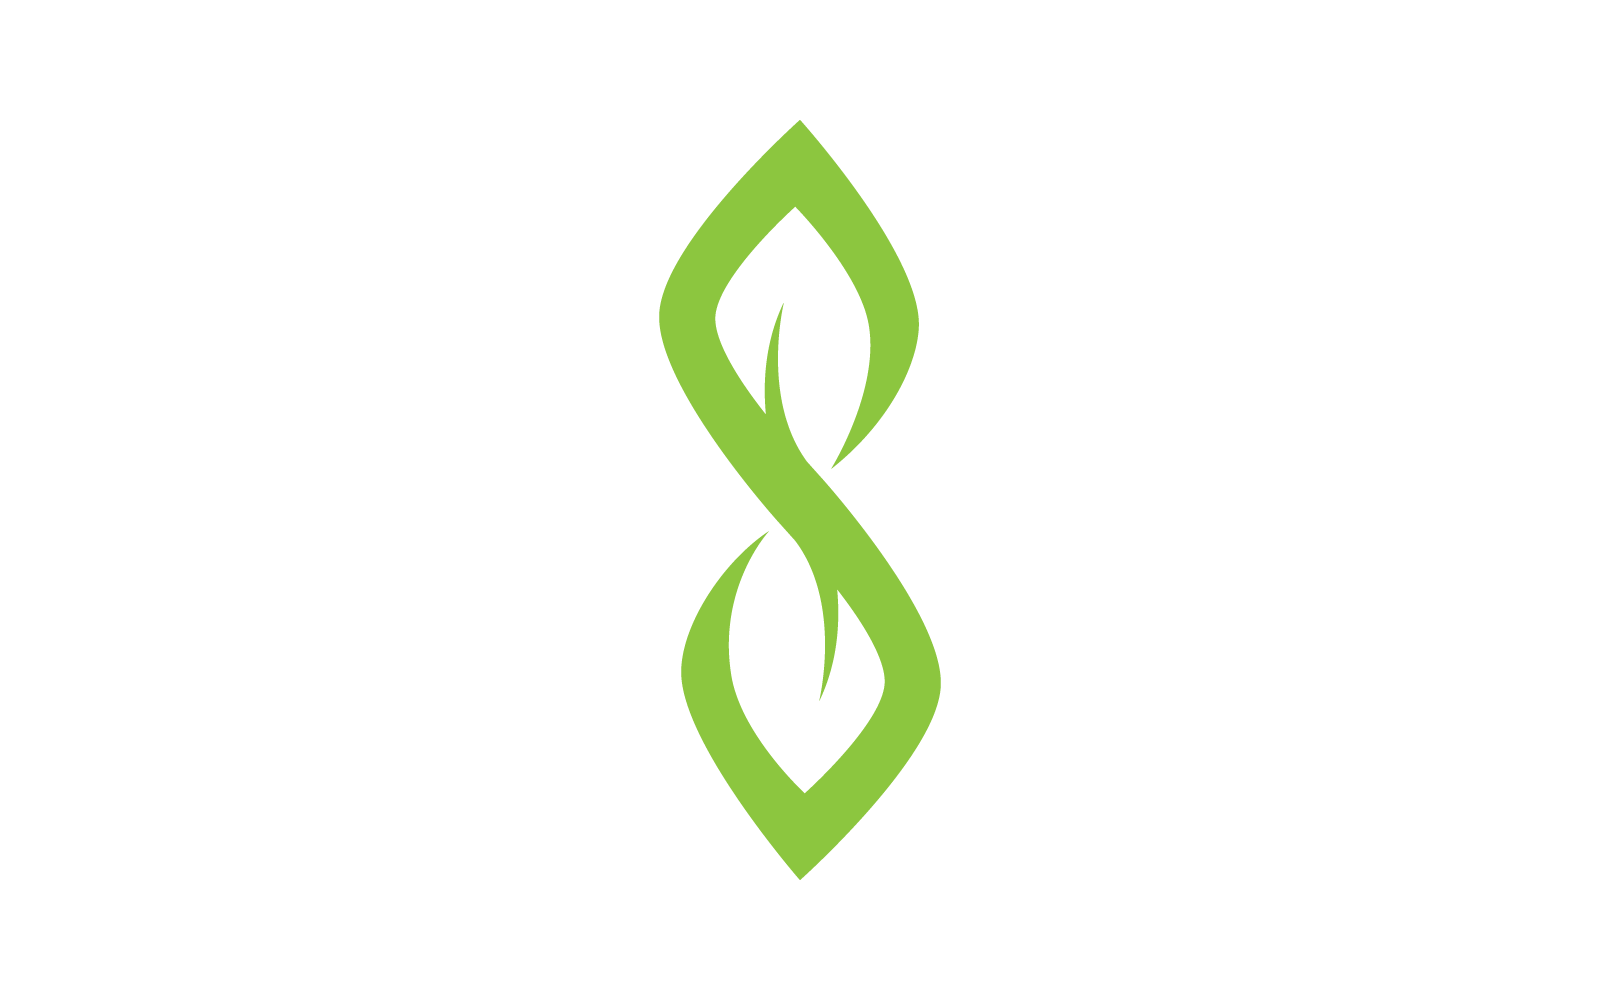 Green leaf illustration design nature logo template